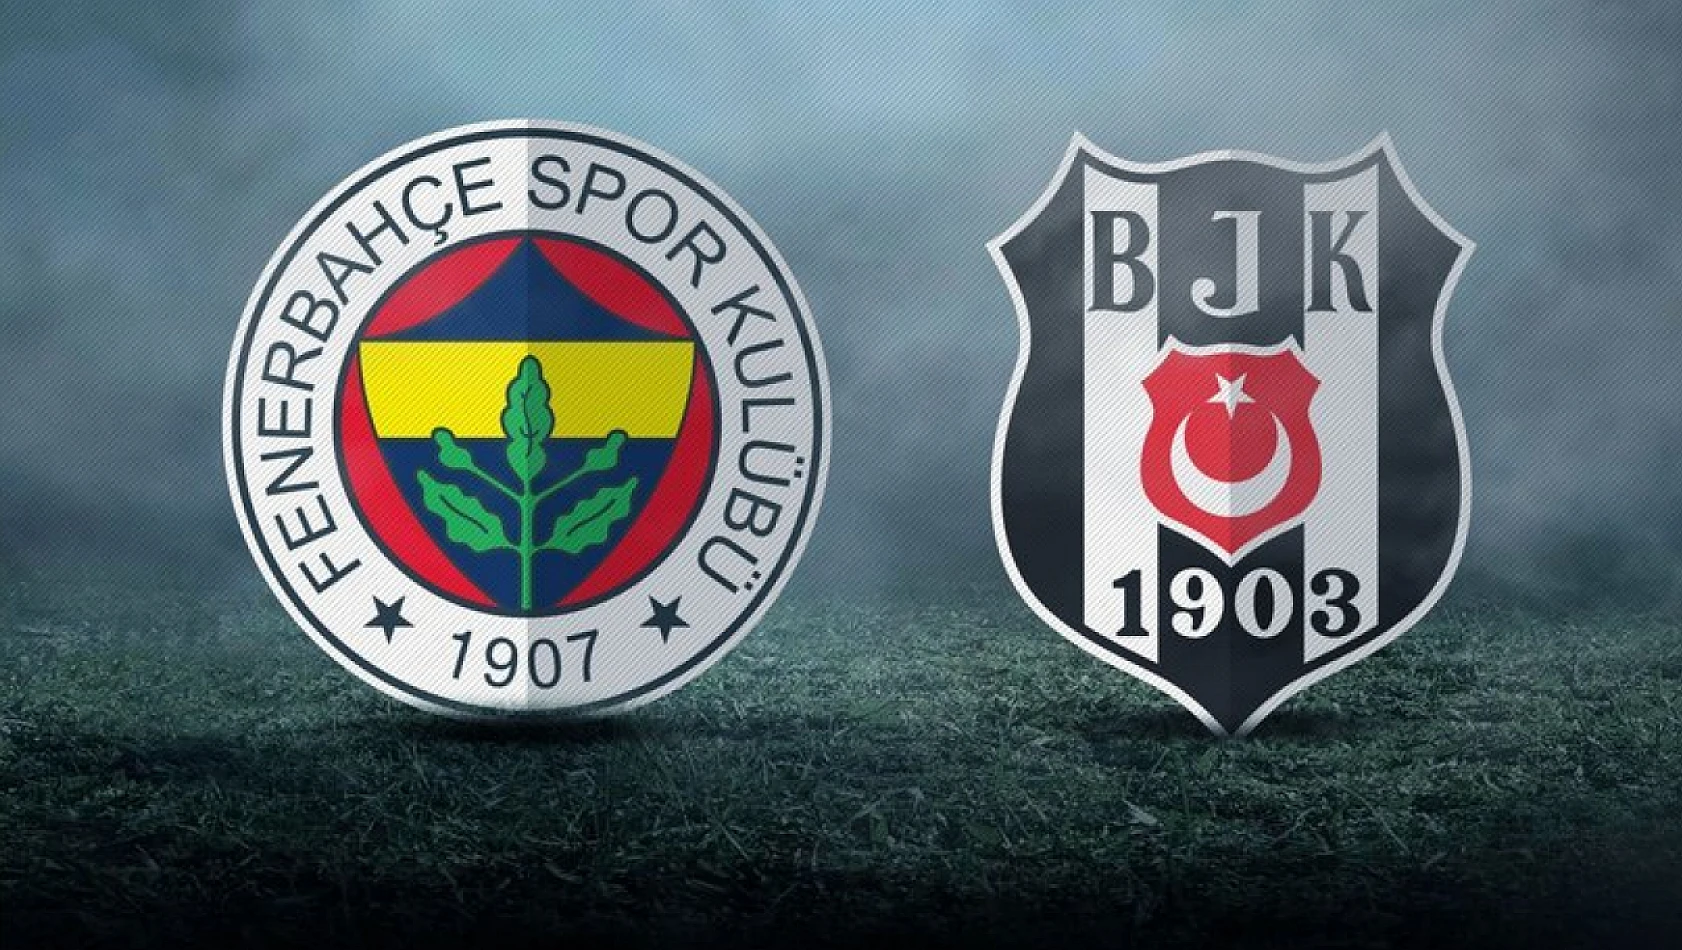 Fenerbahçe-Beşiktaş derbileri 'agresif' geçiyor